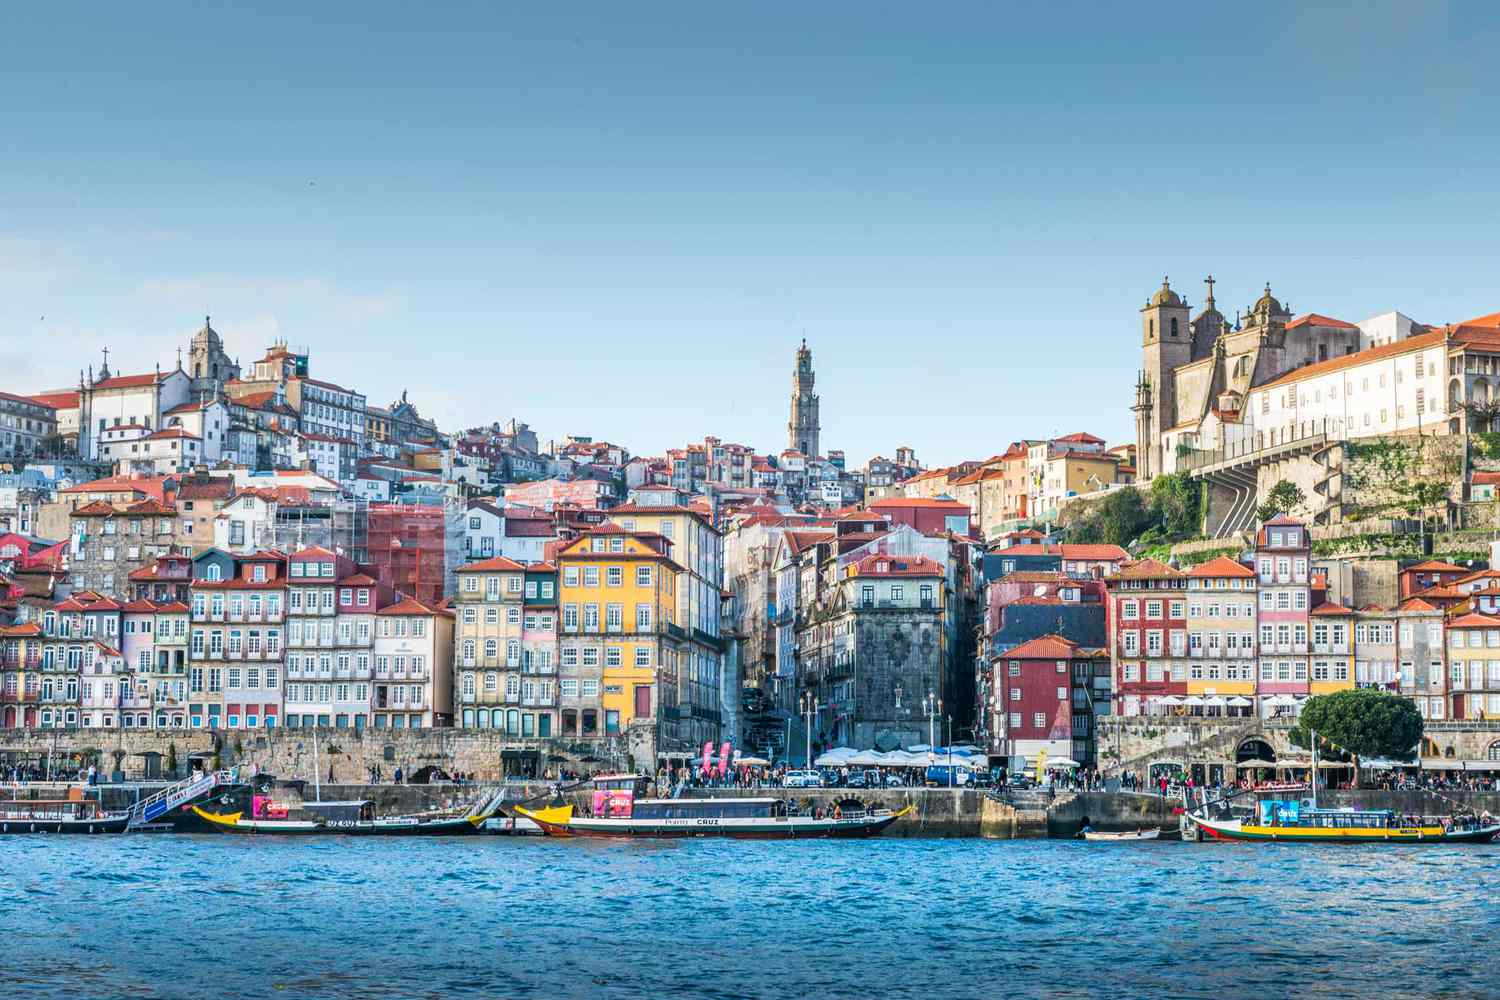 Vue sur le fleuve Douro jusqu'aux bâtiments colorés de Porto, au Portugal, élue l'une des meilleures villes du monde